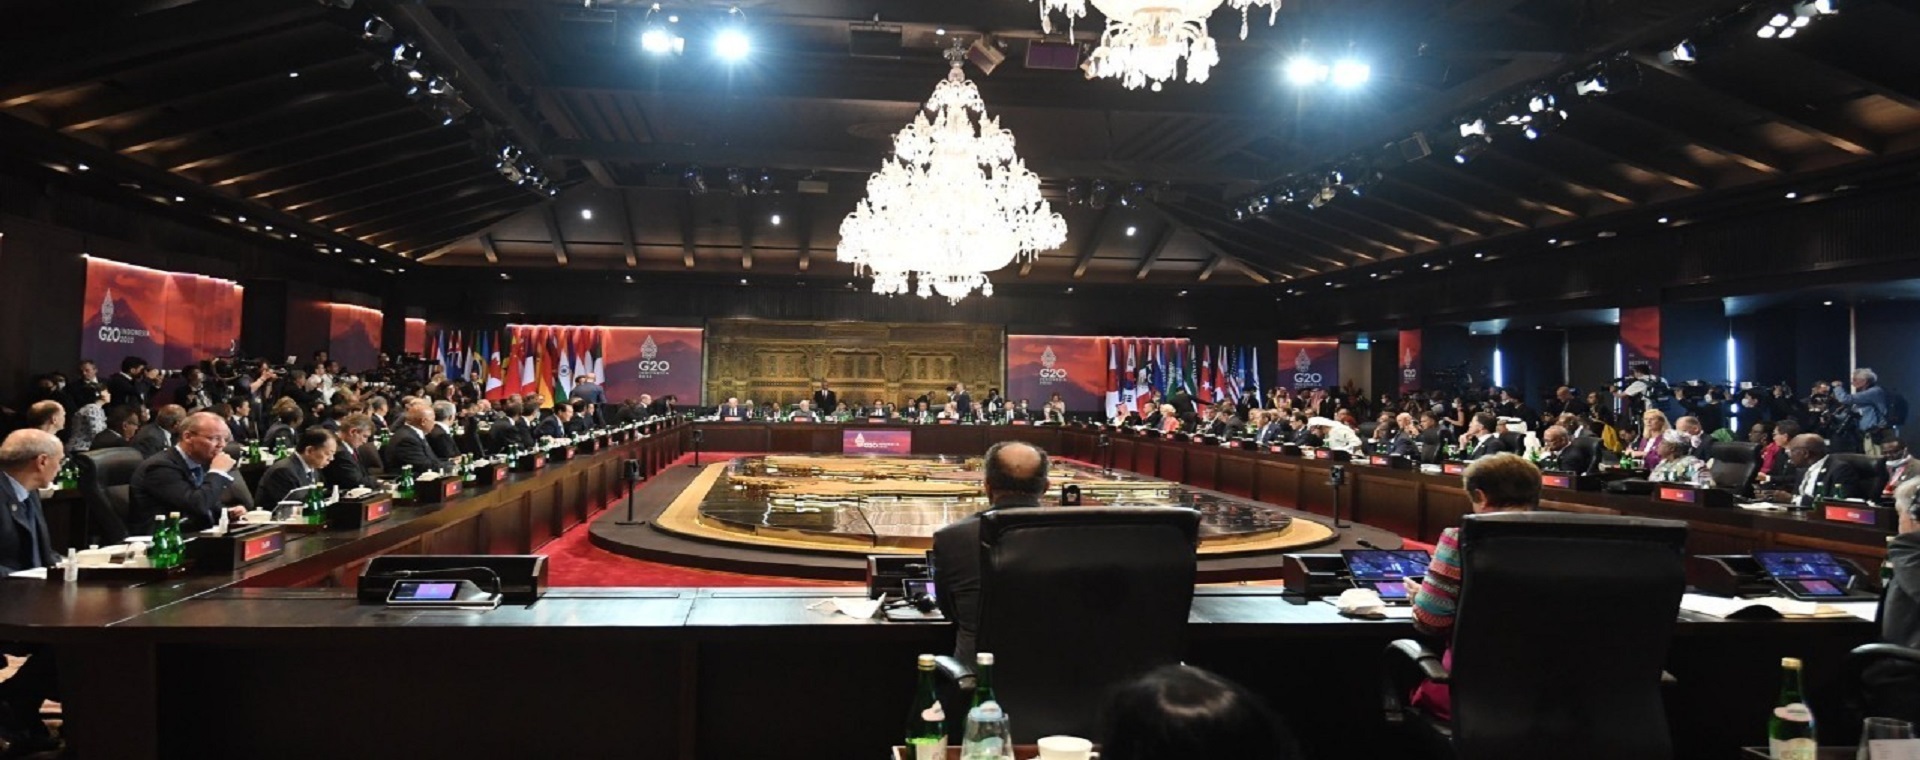  Drama dan Kejadian Mencengangkan saat Perhelatan KTT G20 Bali